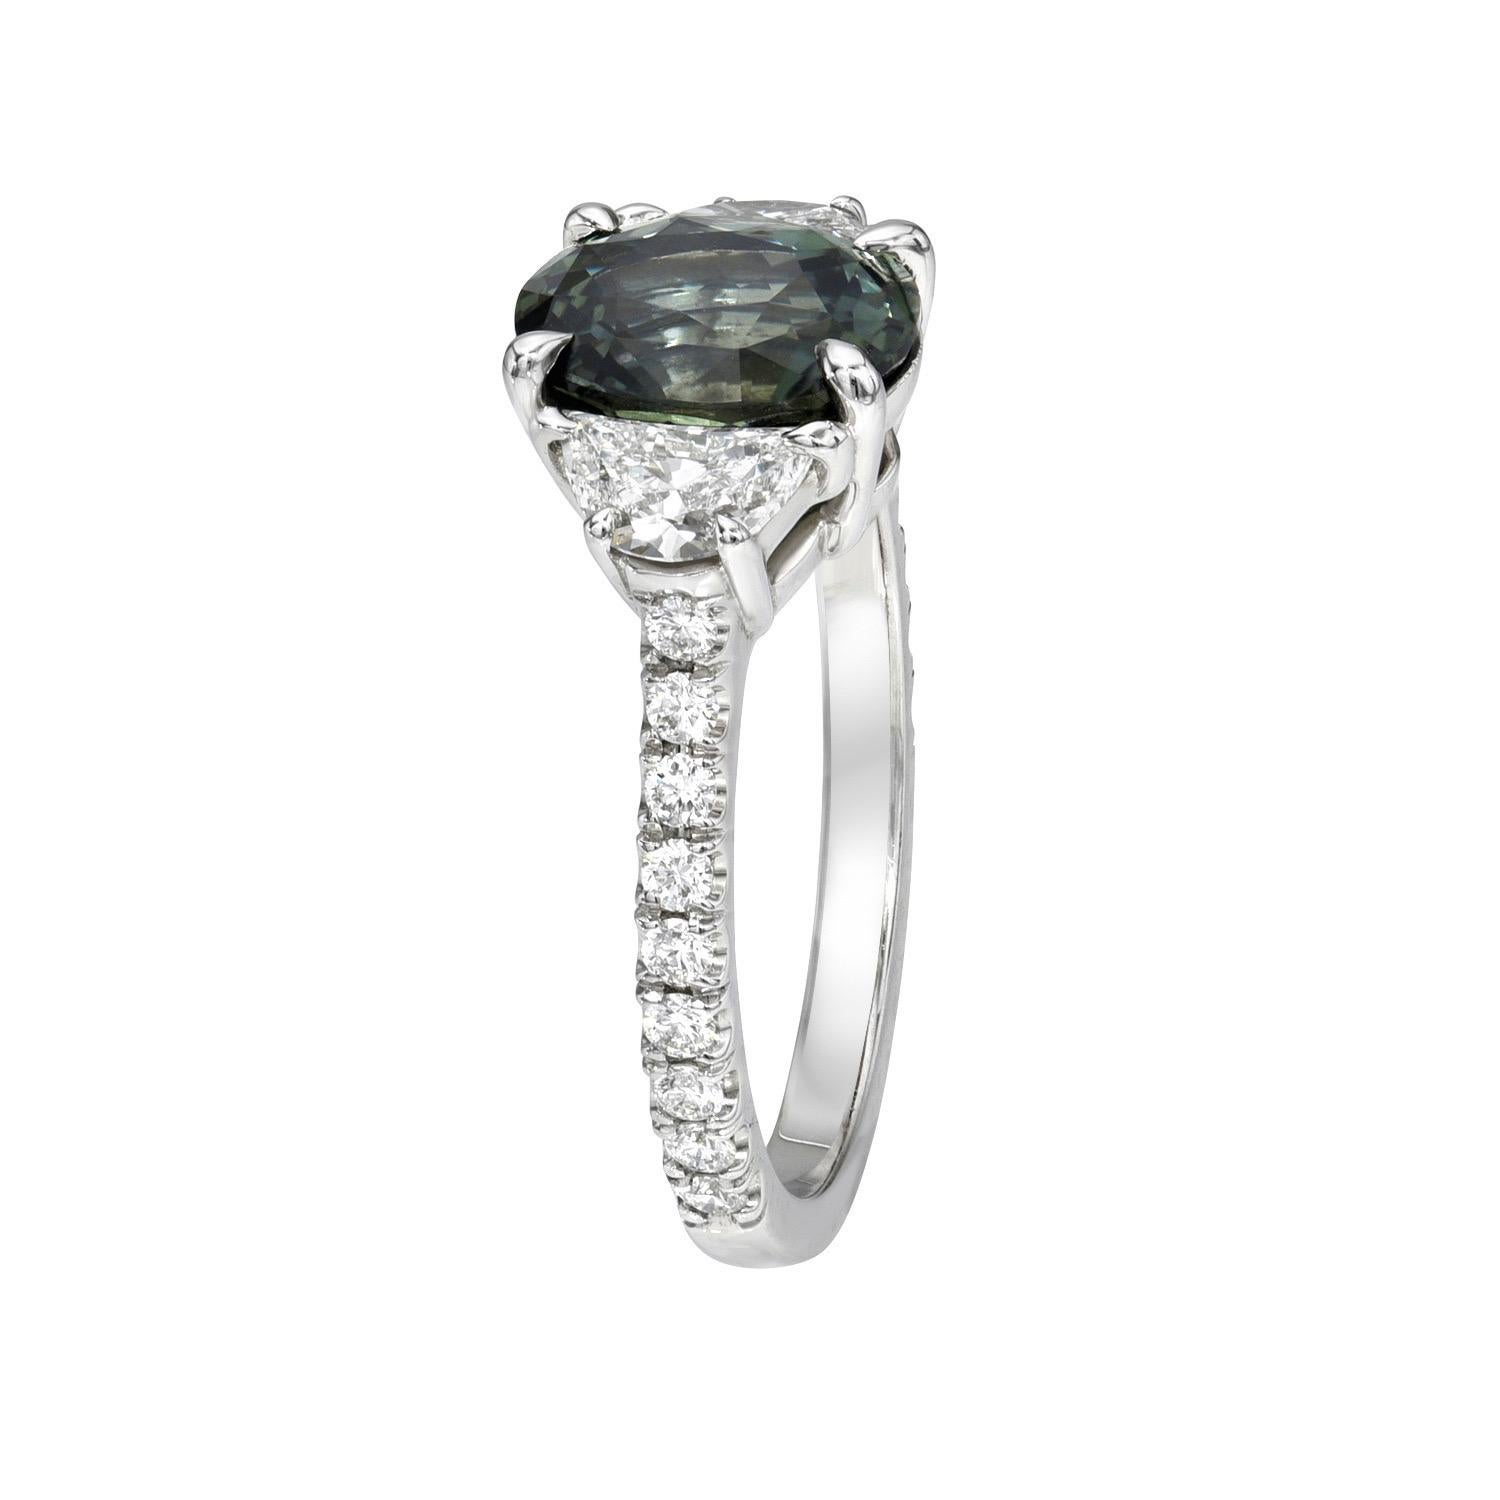 Exklusiver ovaler, dreisteiniger Platinring mit 2,58 Karat natürlichem, unerhitztem grünem Saphir, verziert mit einem Paar halbmondförmiger Diamanten von 0,54 Karat, Farbe F/VS2-SI1, und insgesamt 0,27 Karat runden Brillanten.
Größe 6. Die